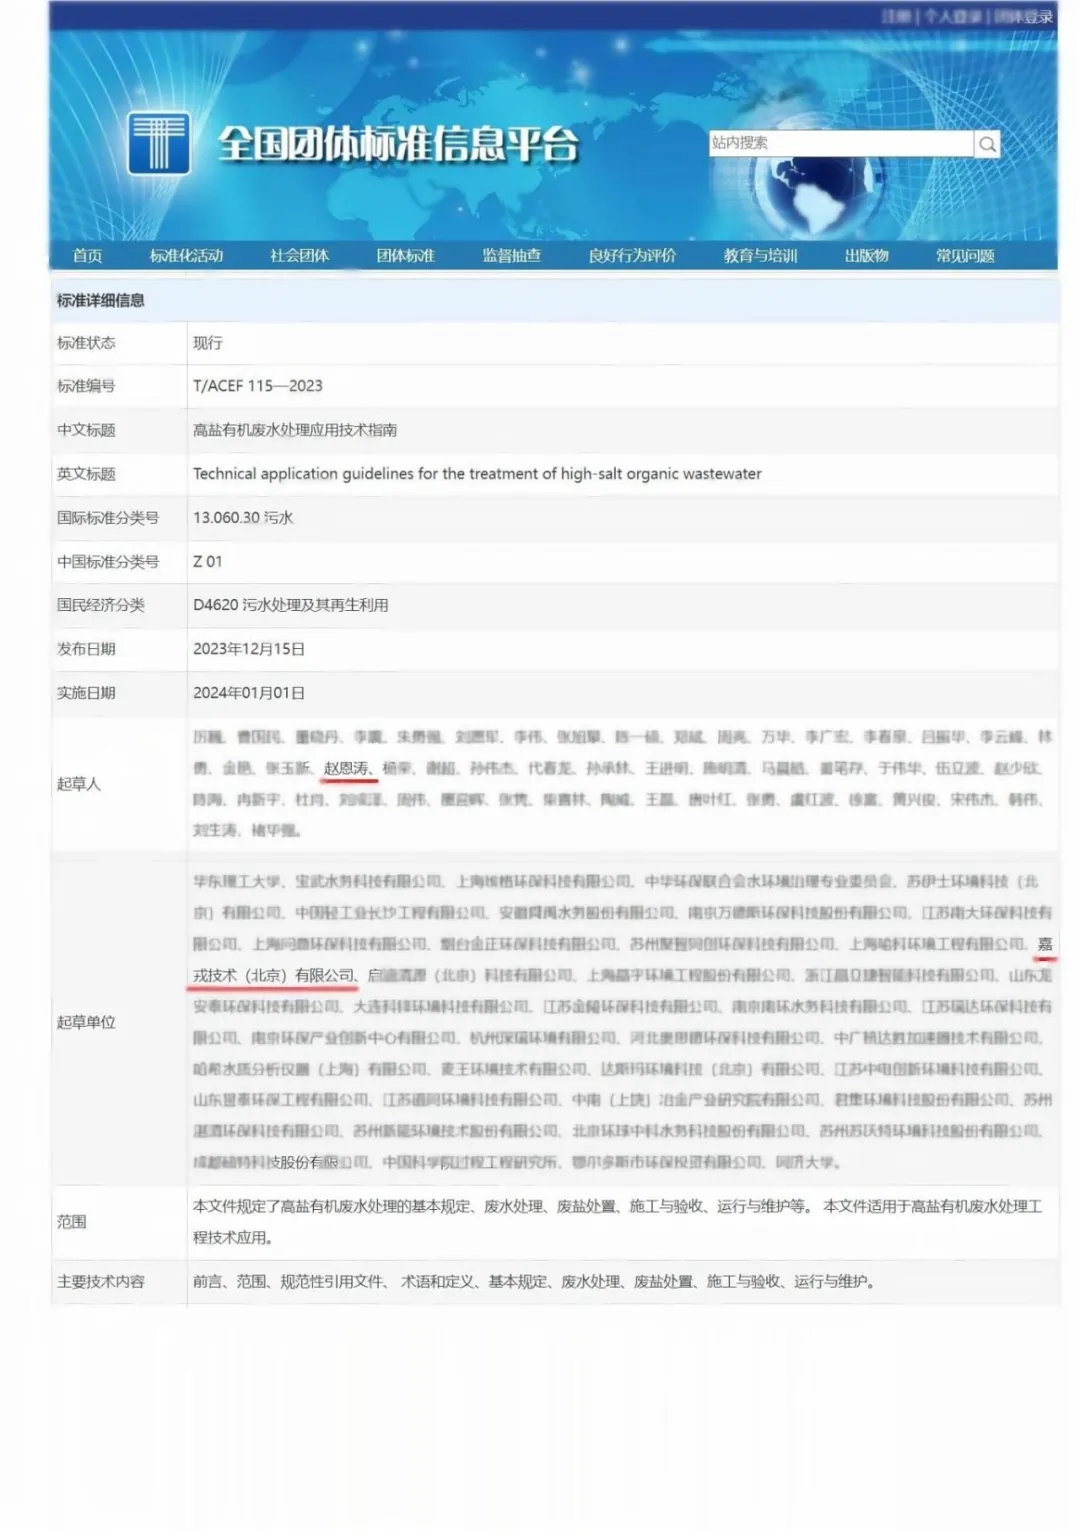 北京嘉戎参编--首个高盐有机废水处理技术标准发布！